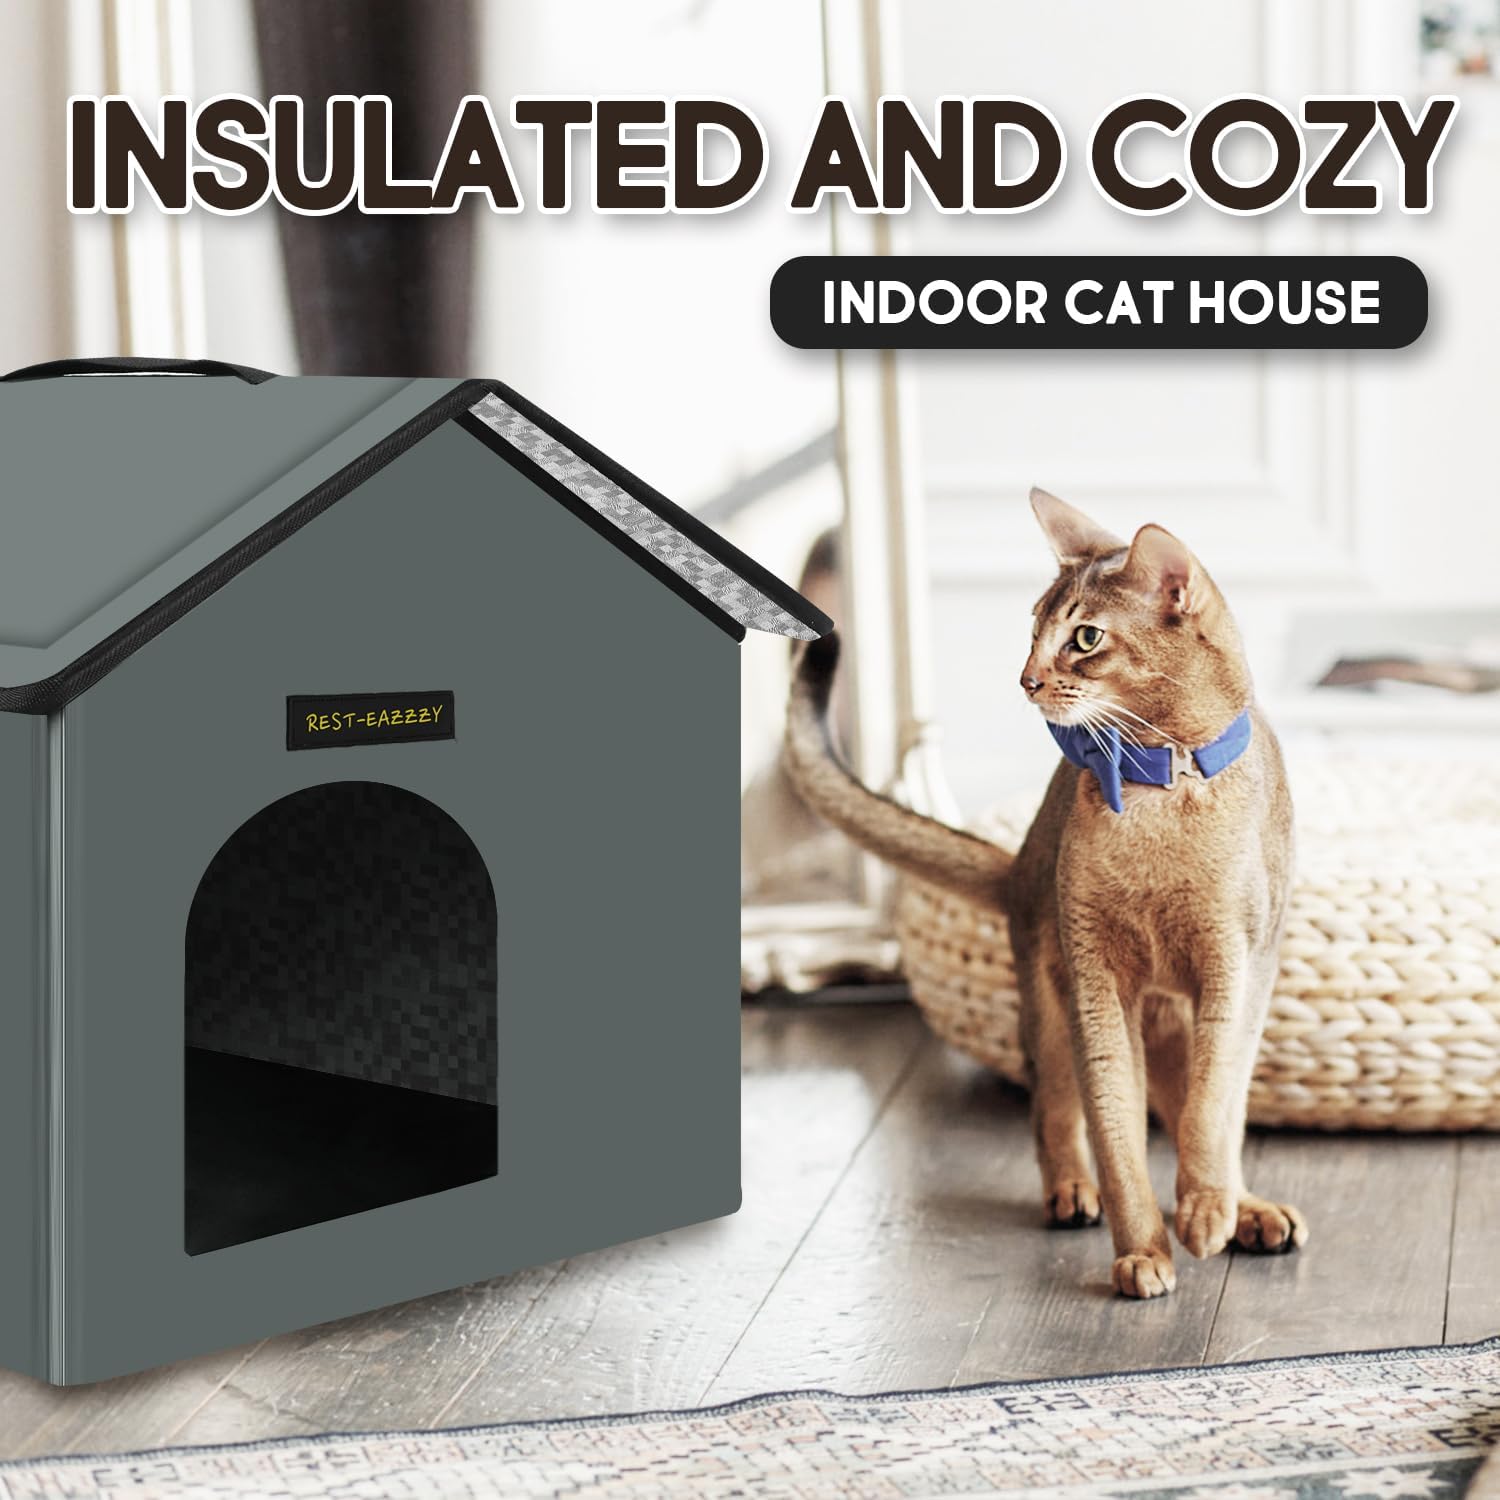 Casa para gatos al aire libre, resistente a la intemperie y aislada, con